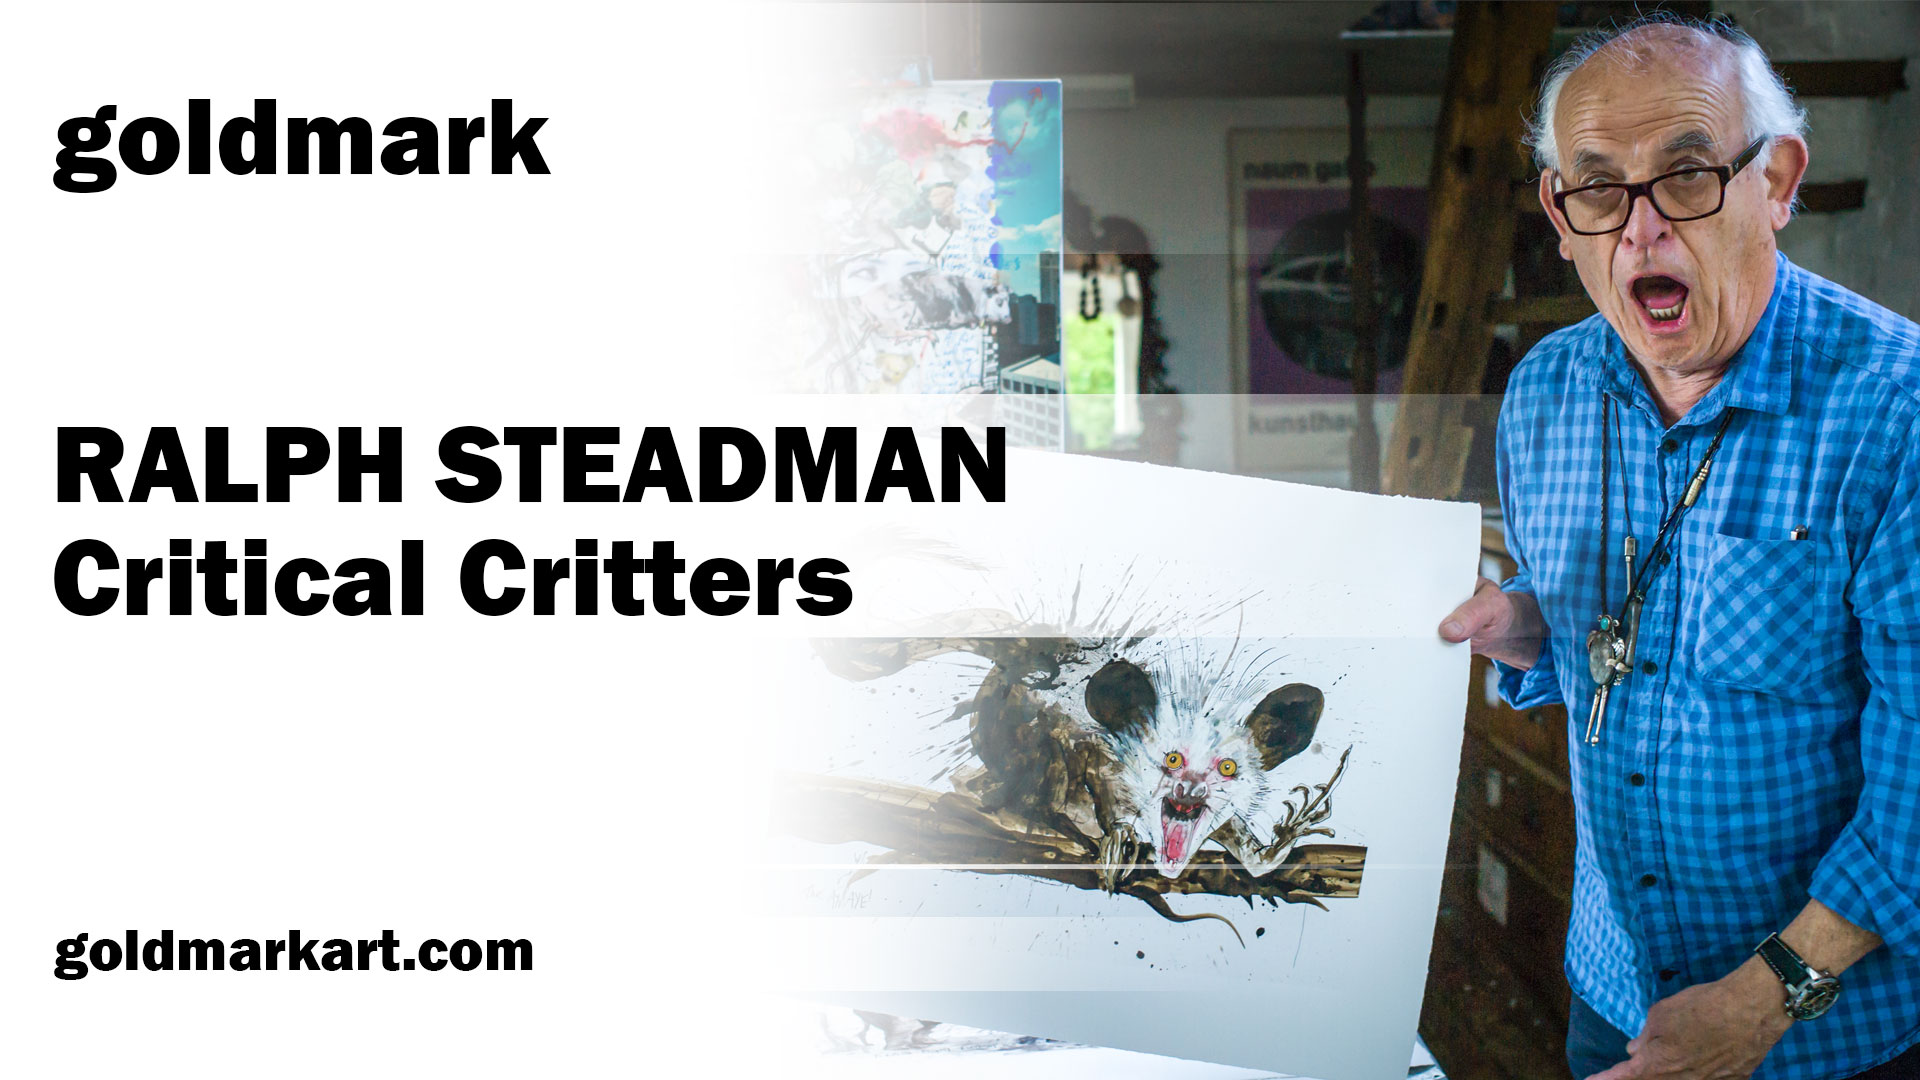 VIDEO: Legendary Artist Ralph Steadman Promo for Goldmark — Jonny Lewis  Films